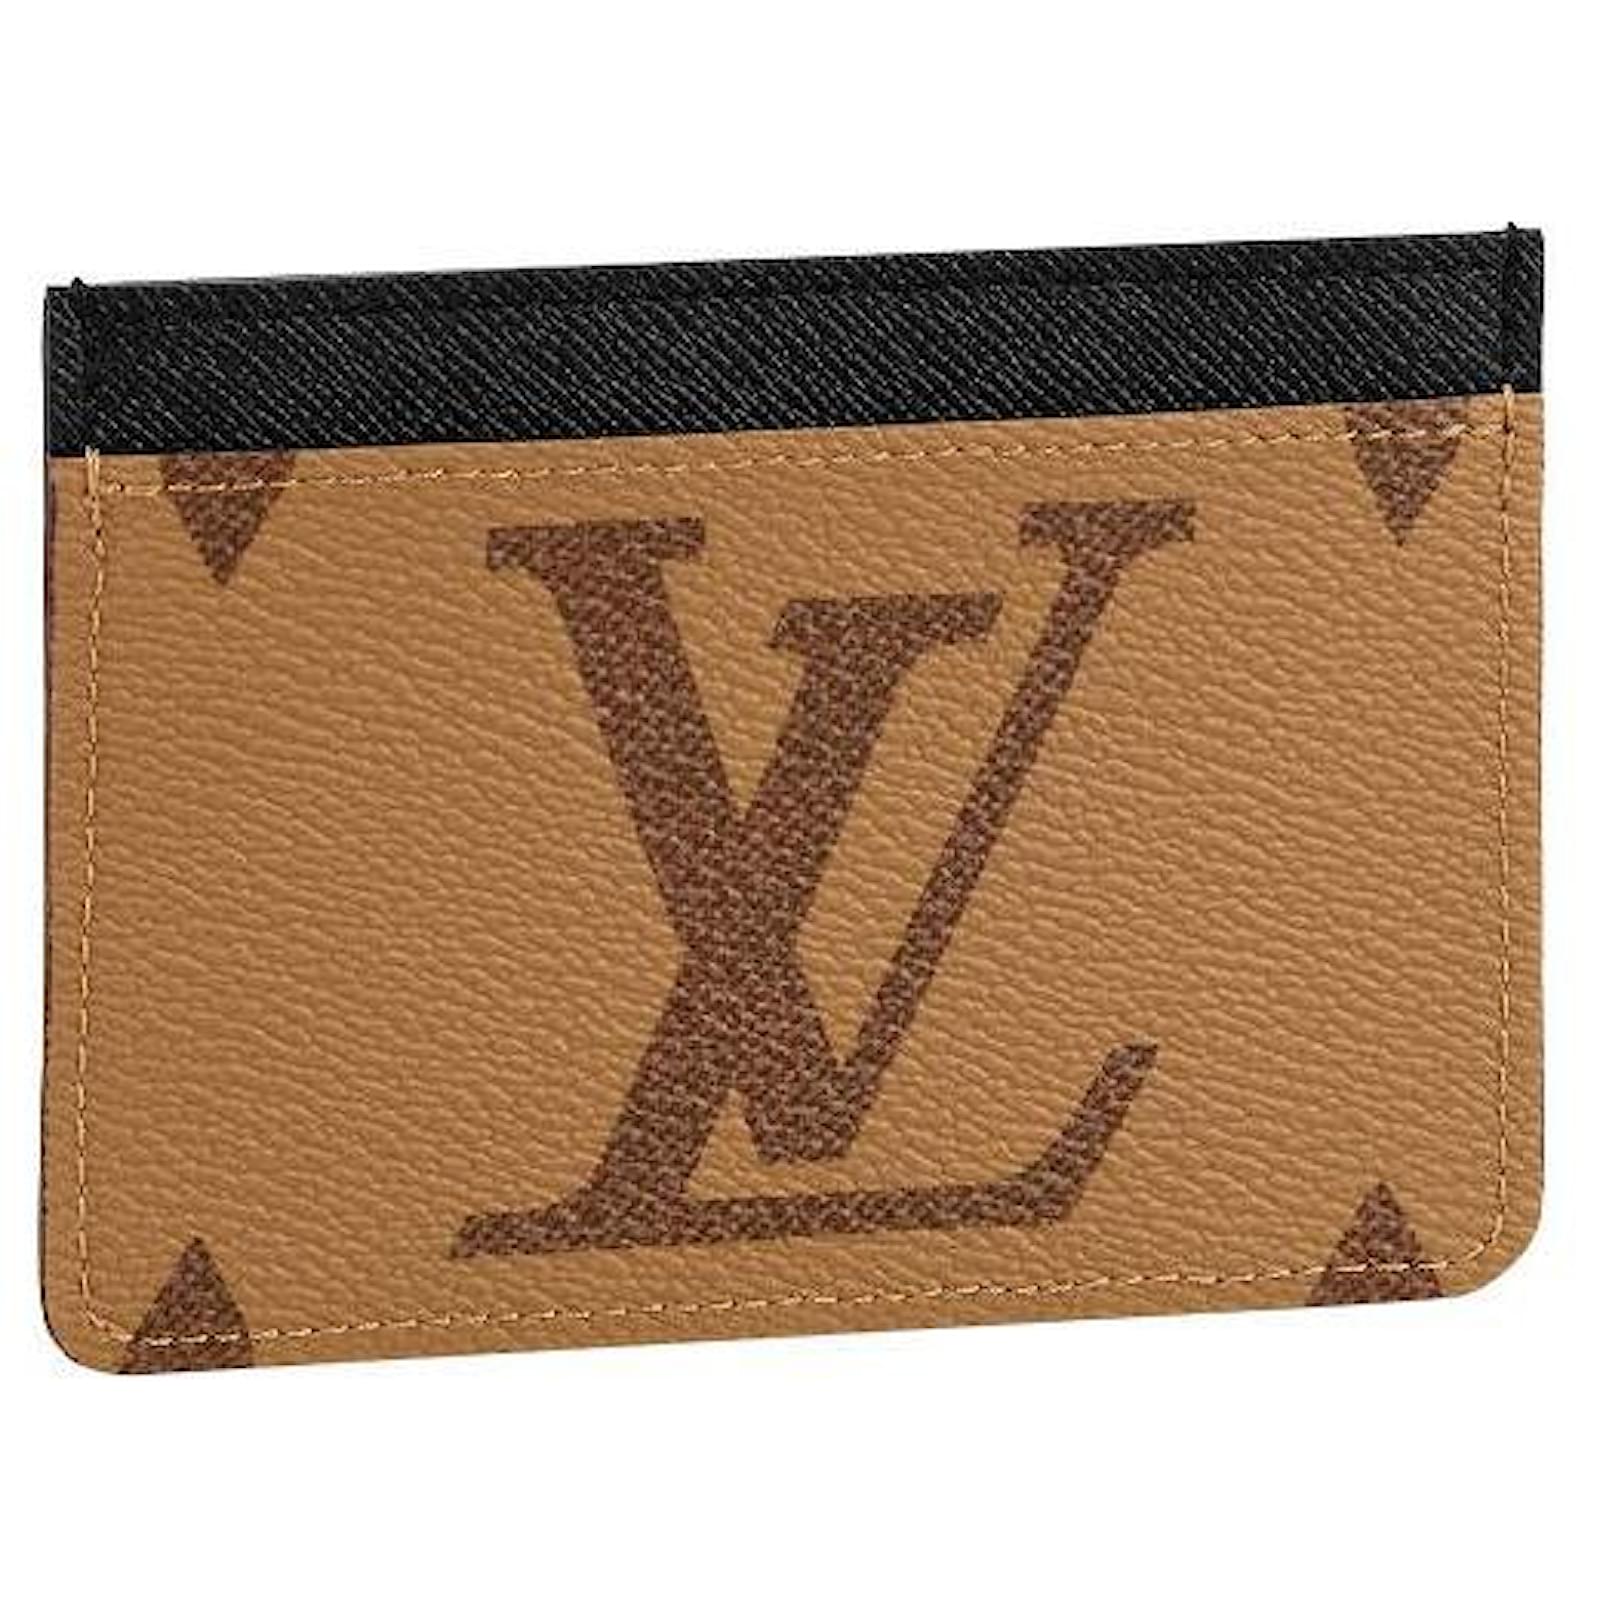 LV Wallet Case